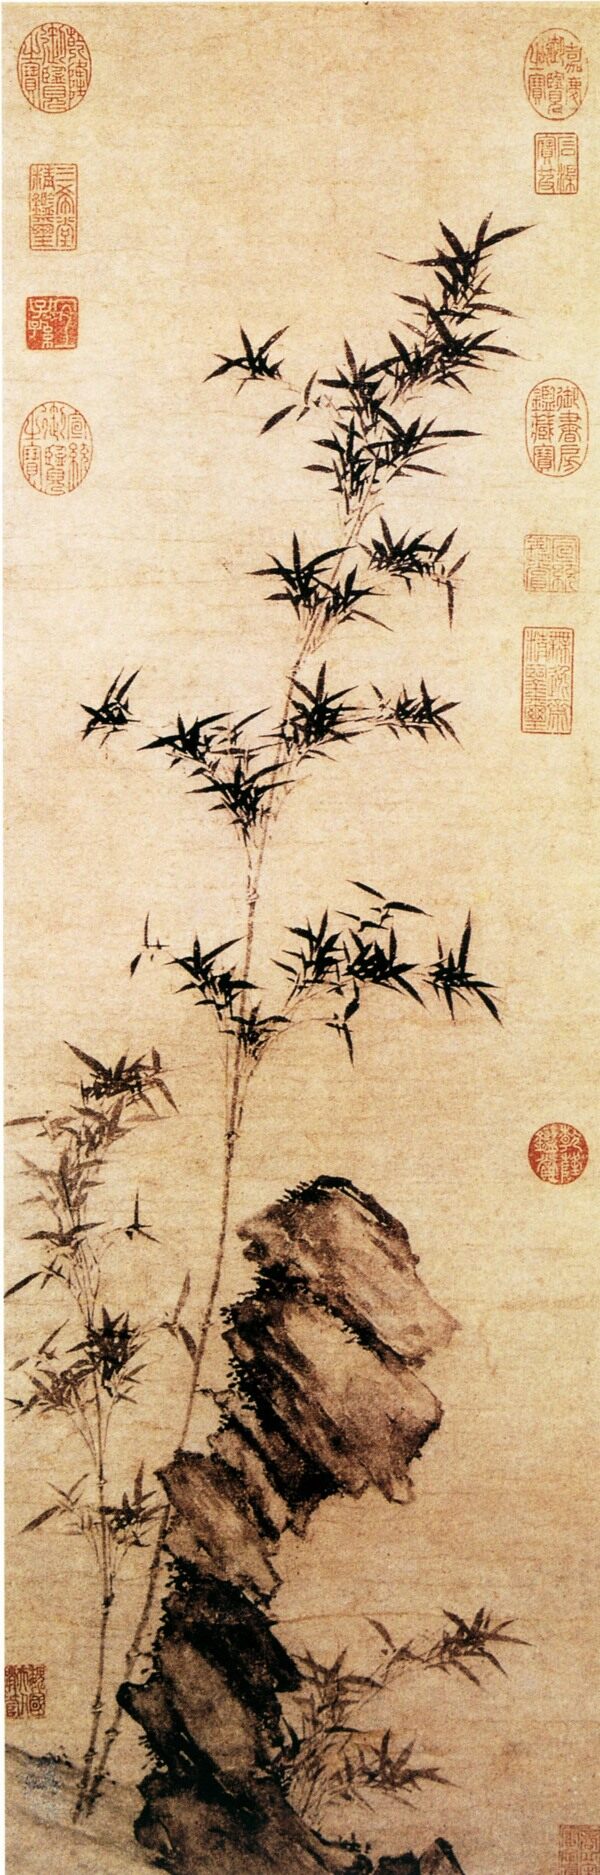 中国传世名画竹子